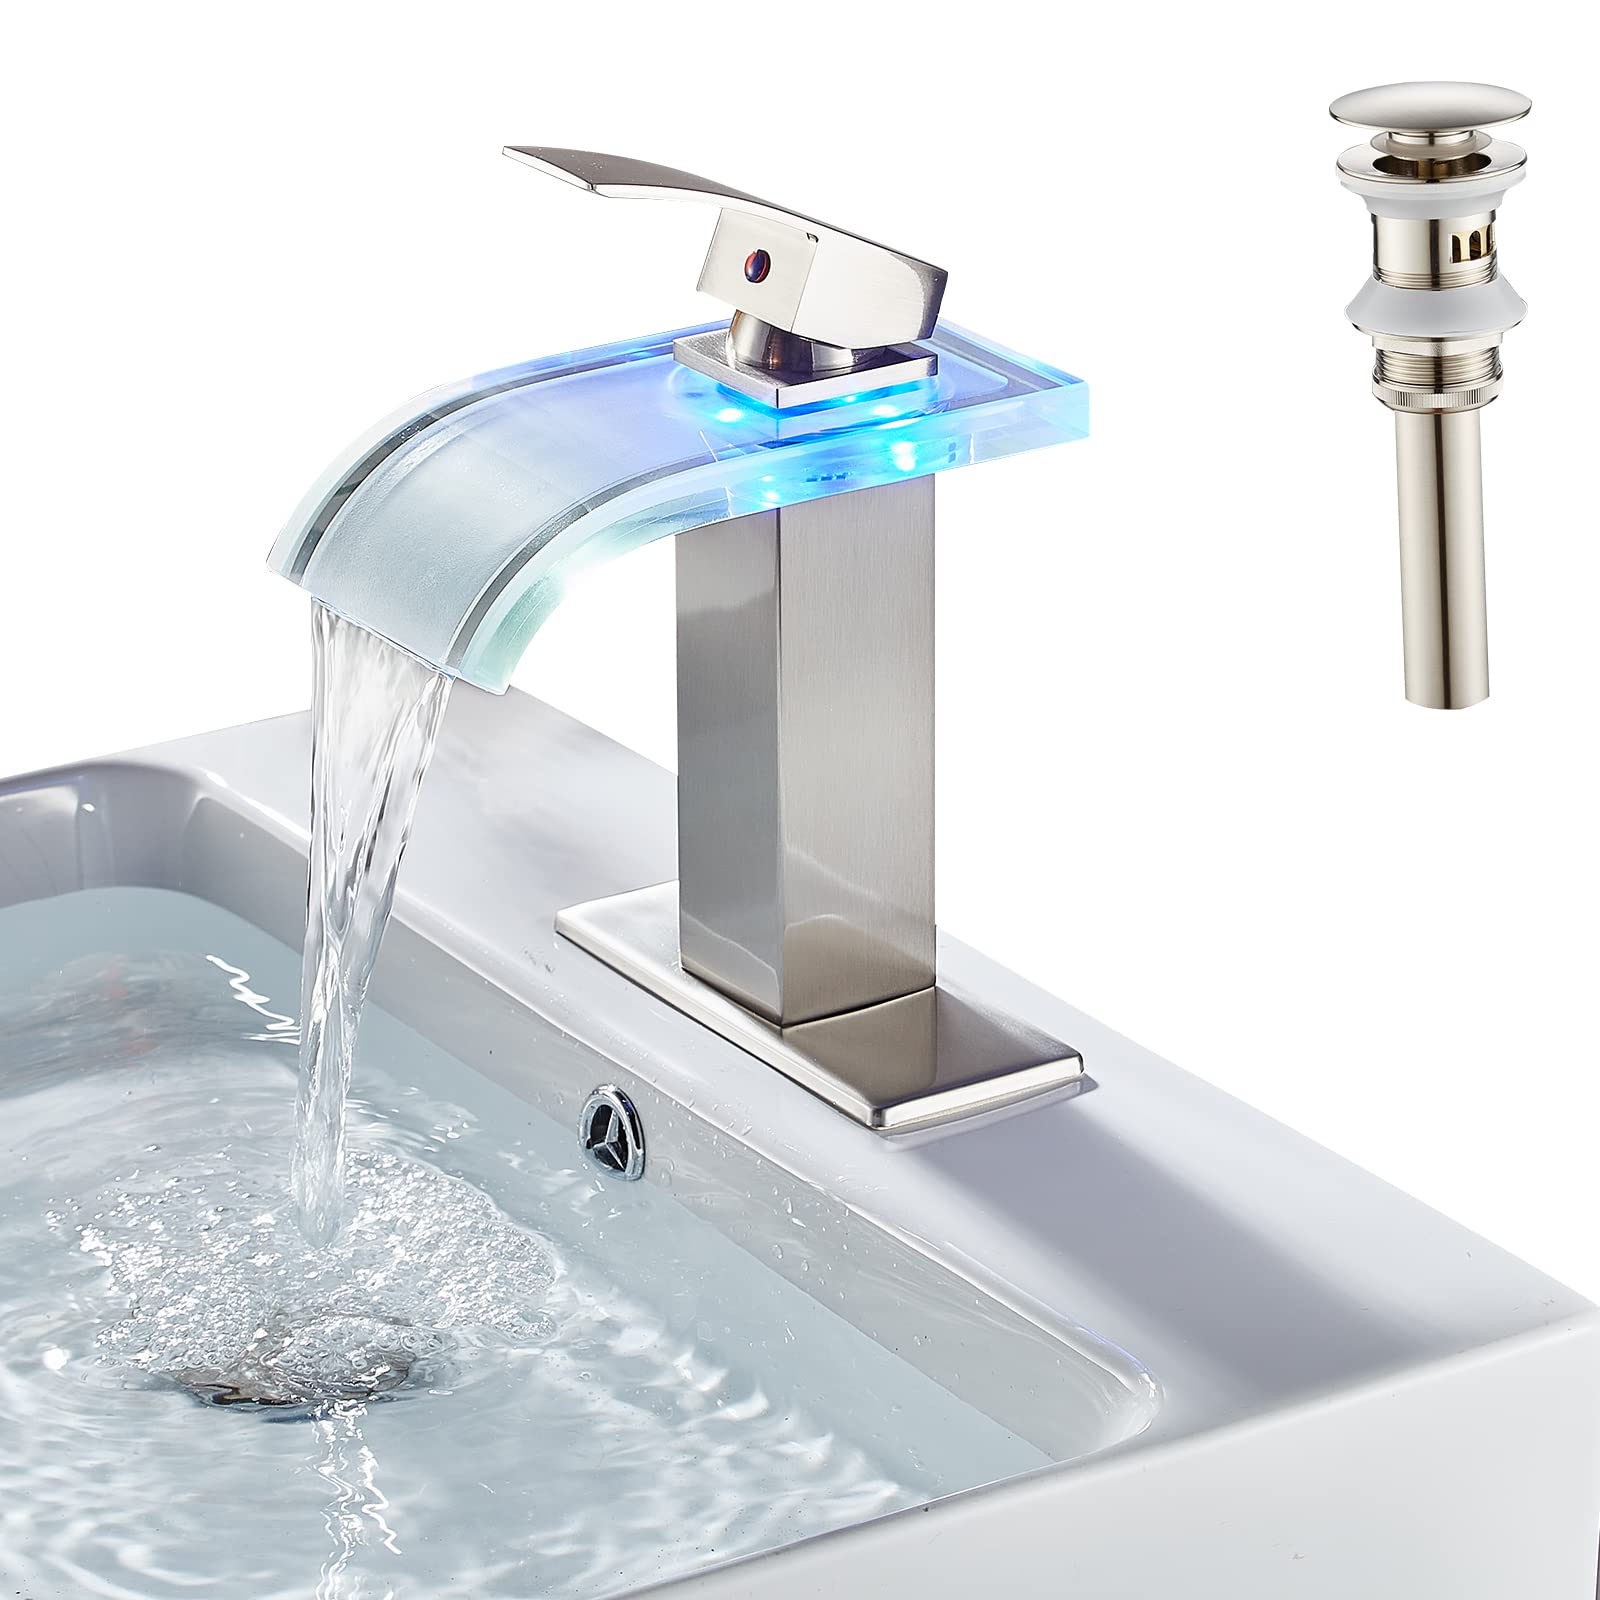 LOOPAN LED Waterfall Faucet